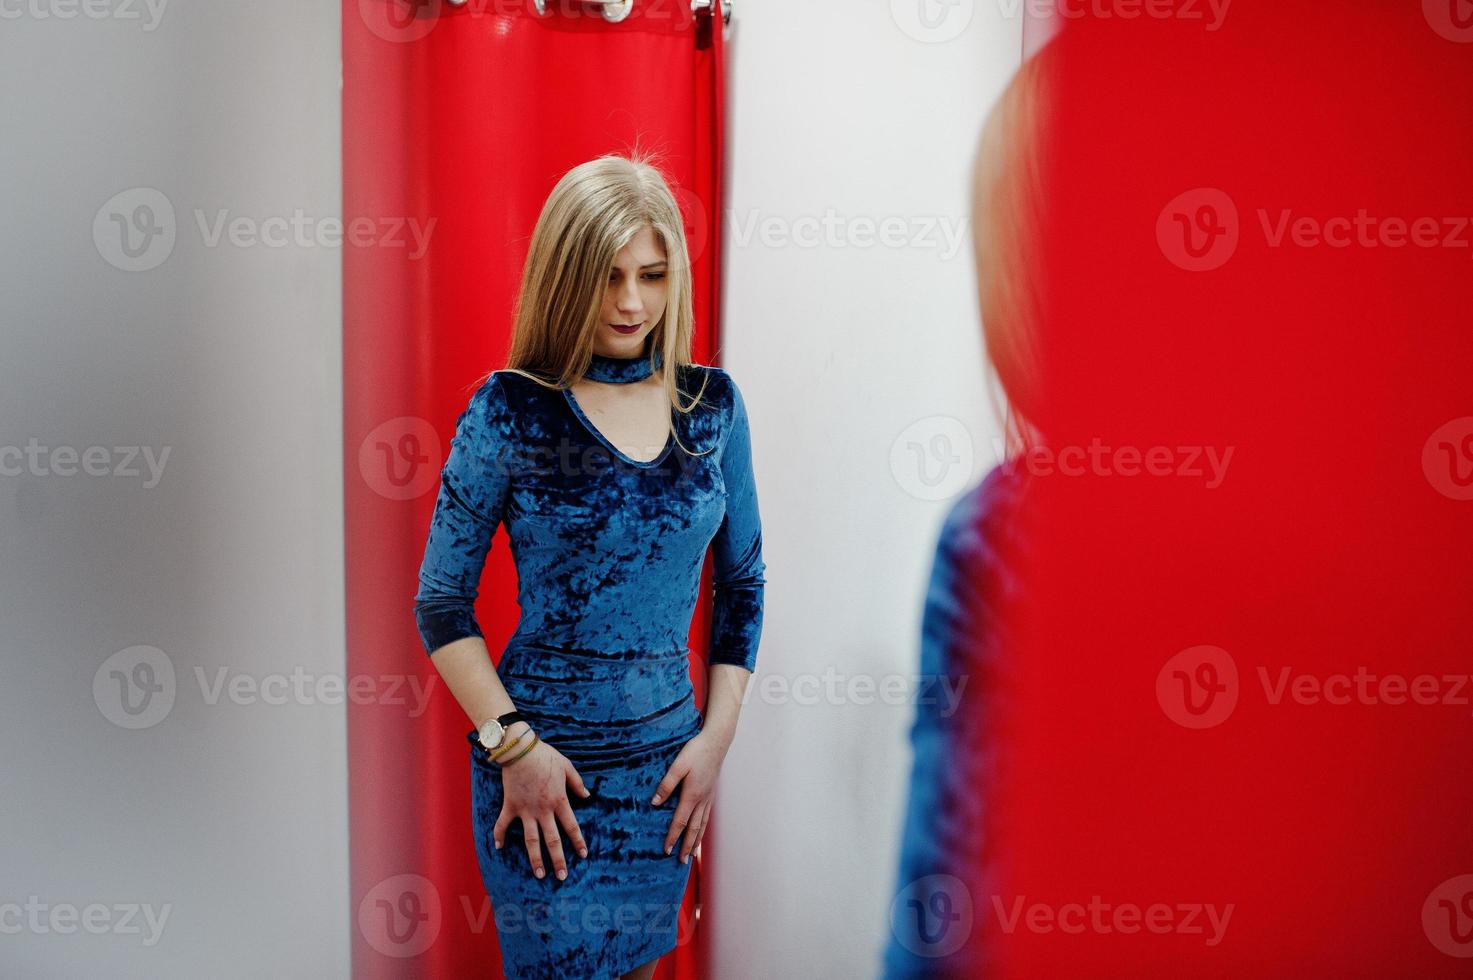 chica rubia con vestido azul en la tienda de ropa con cortinas rojas. foto